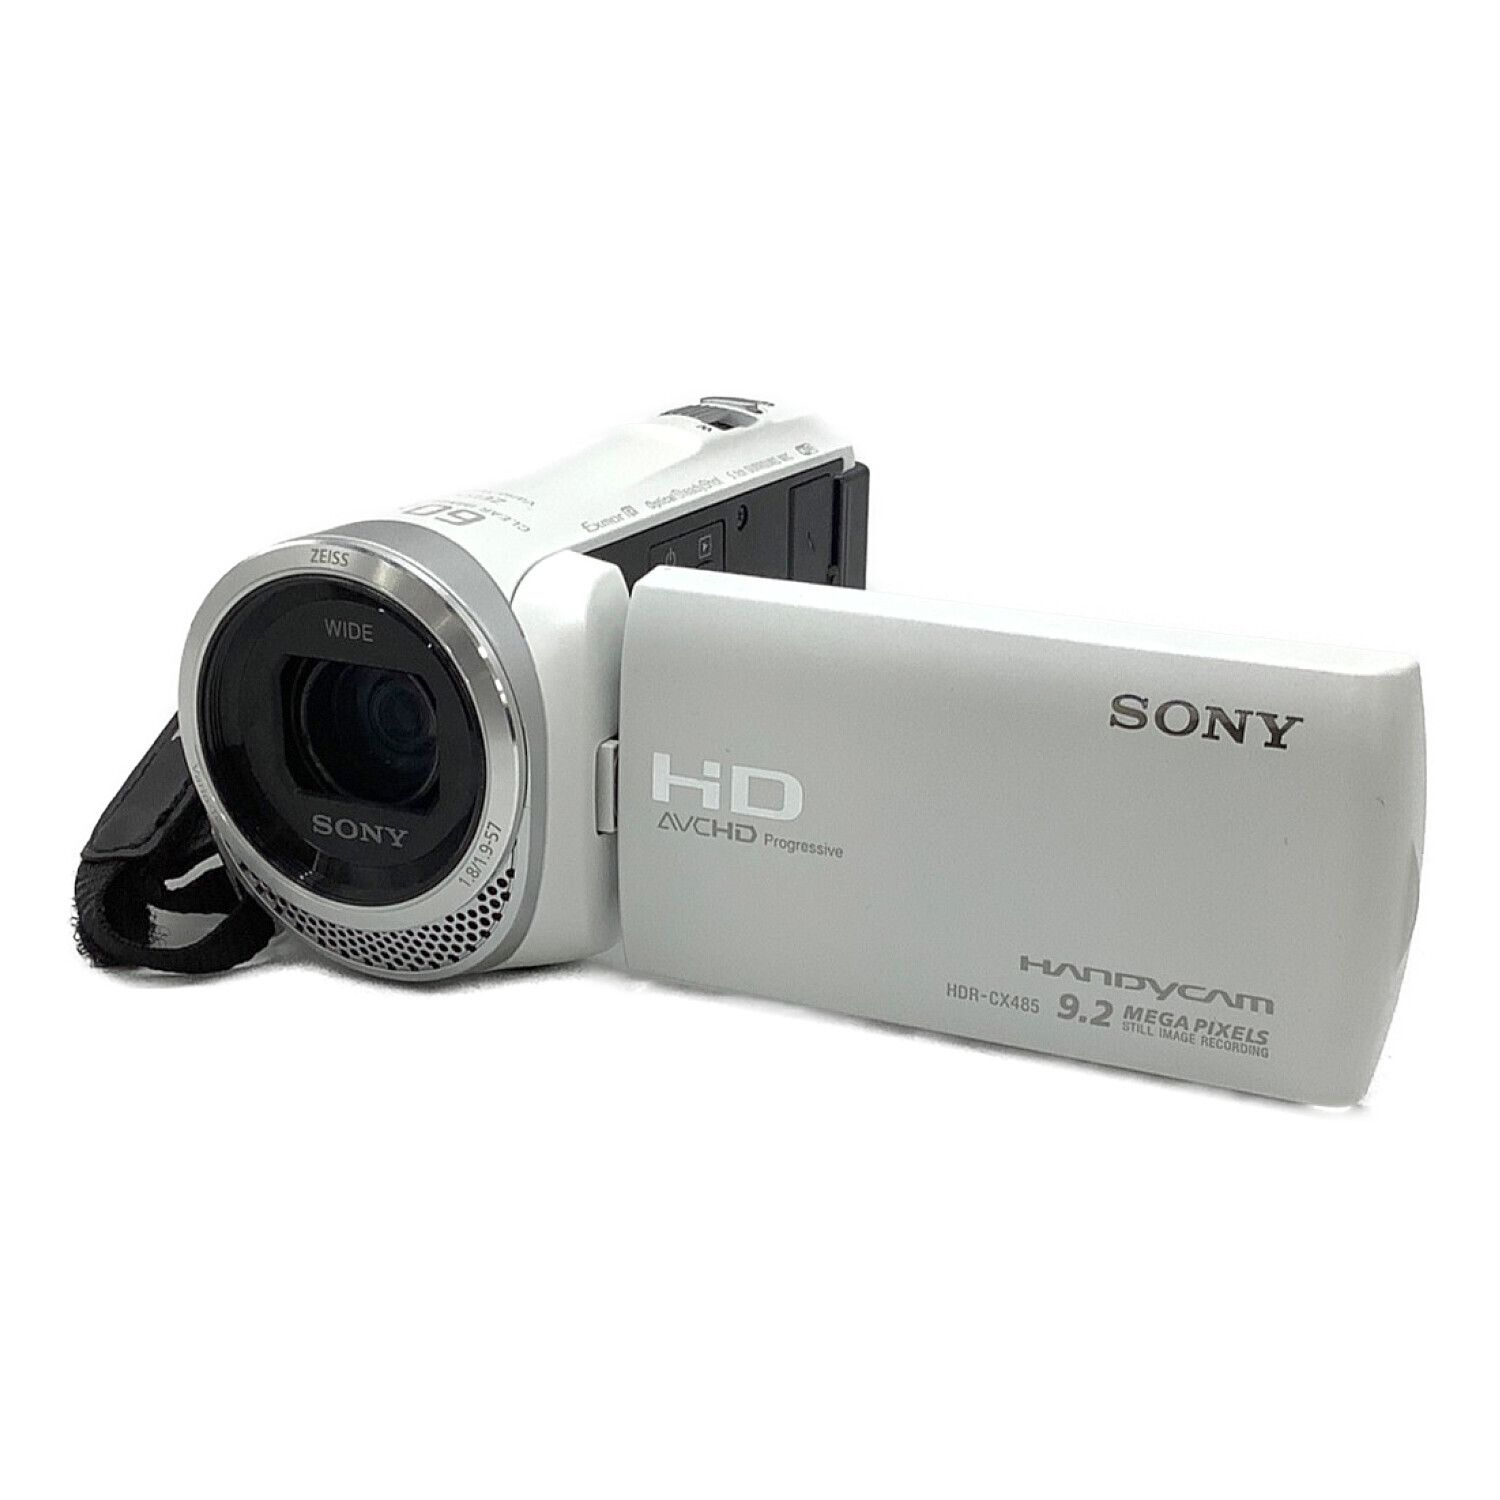 ソニー・CX485・デジタルビデオカメラ